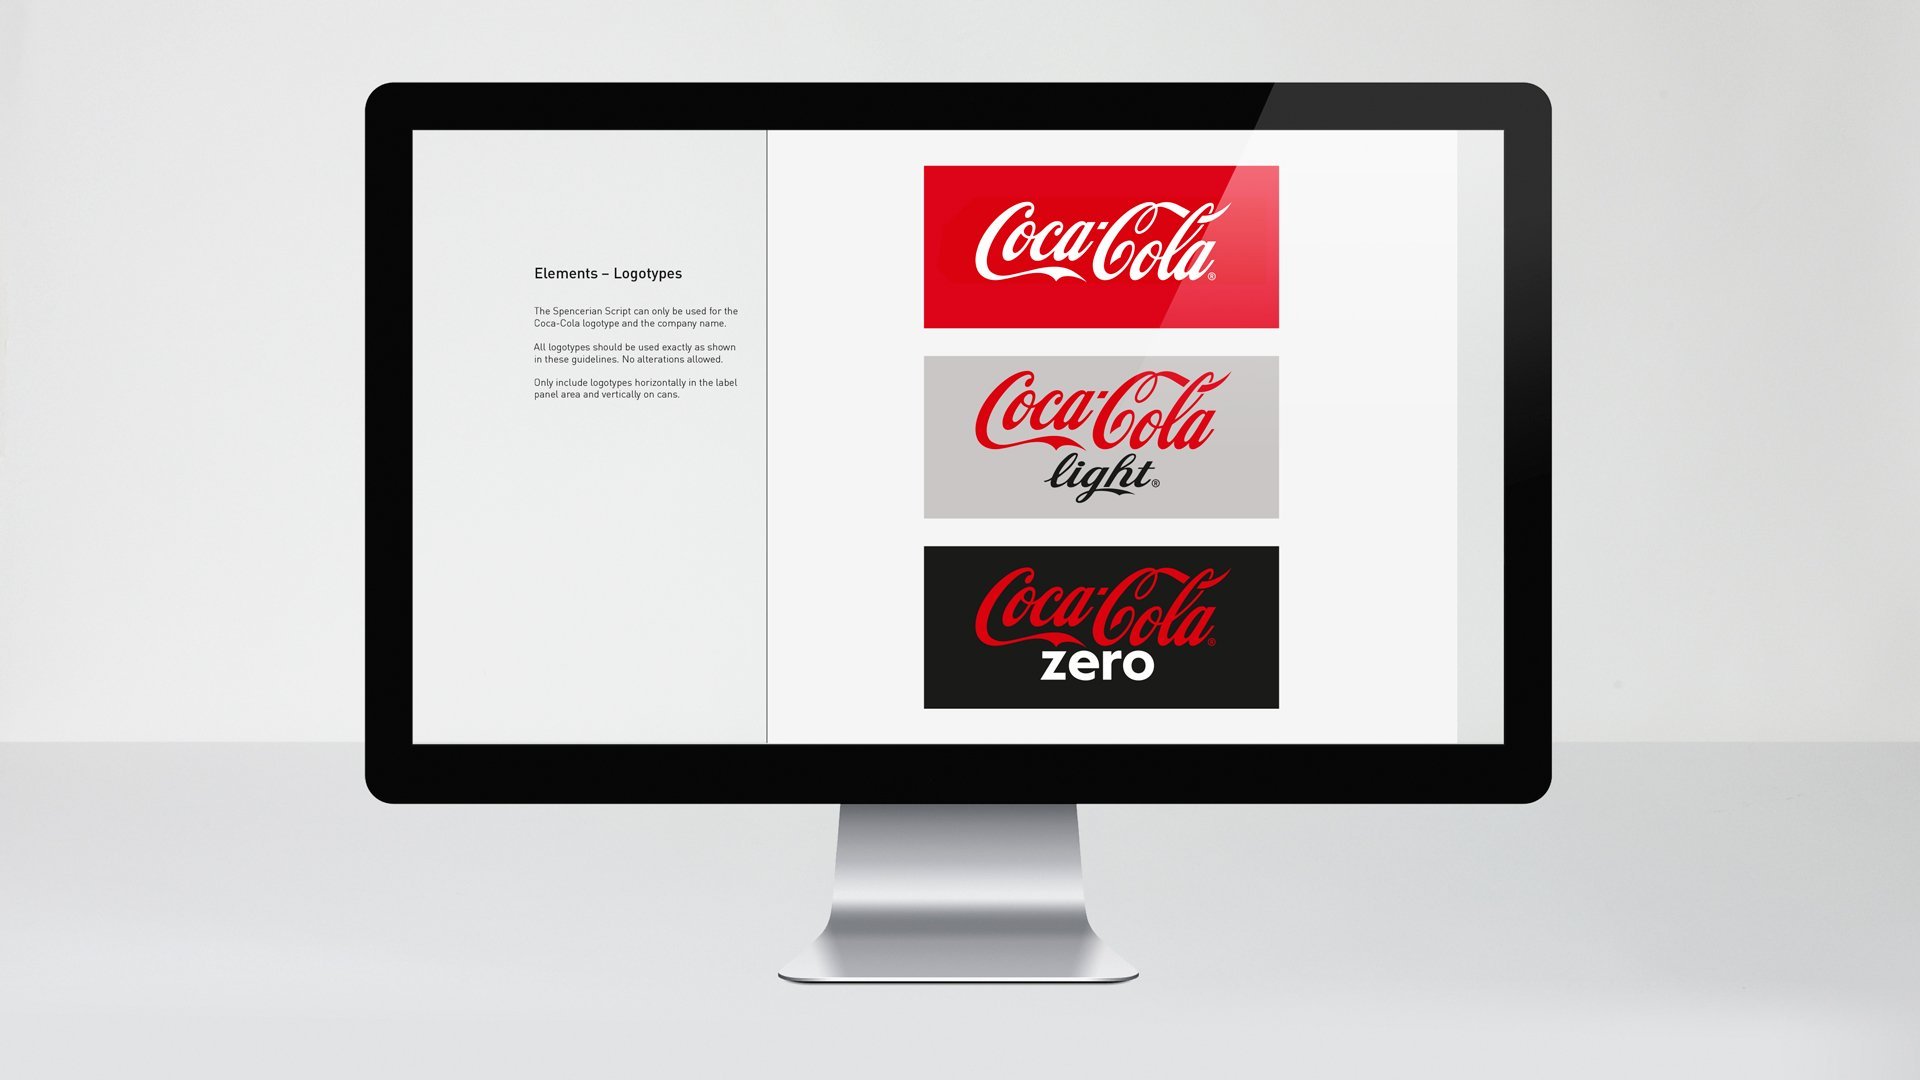 Coca-cola design guide by LOOP Associates